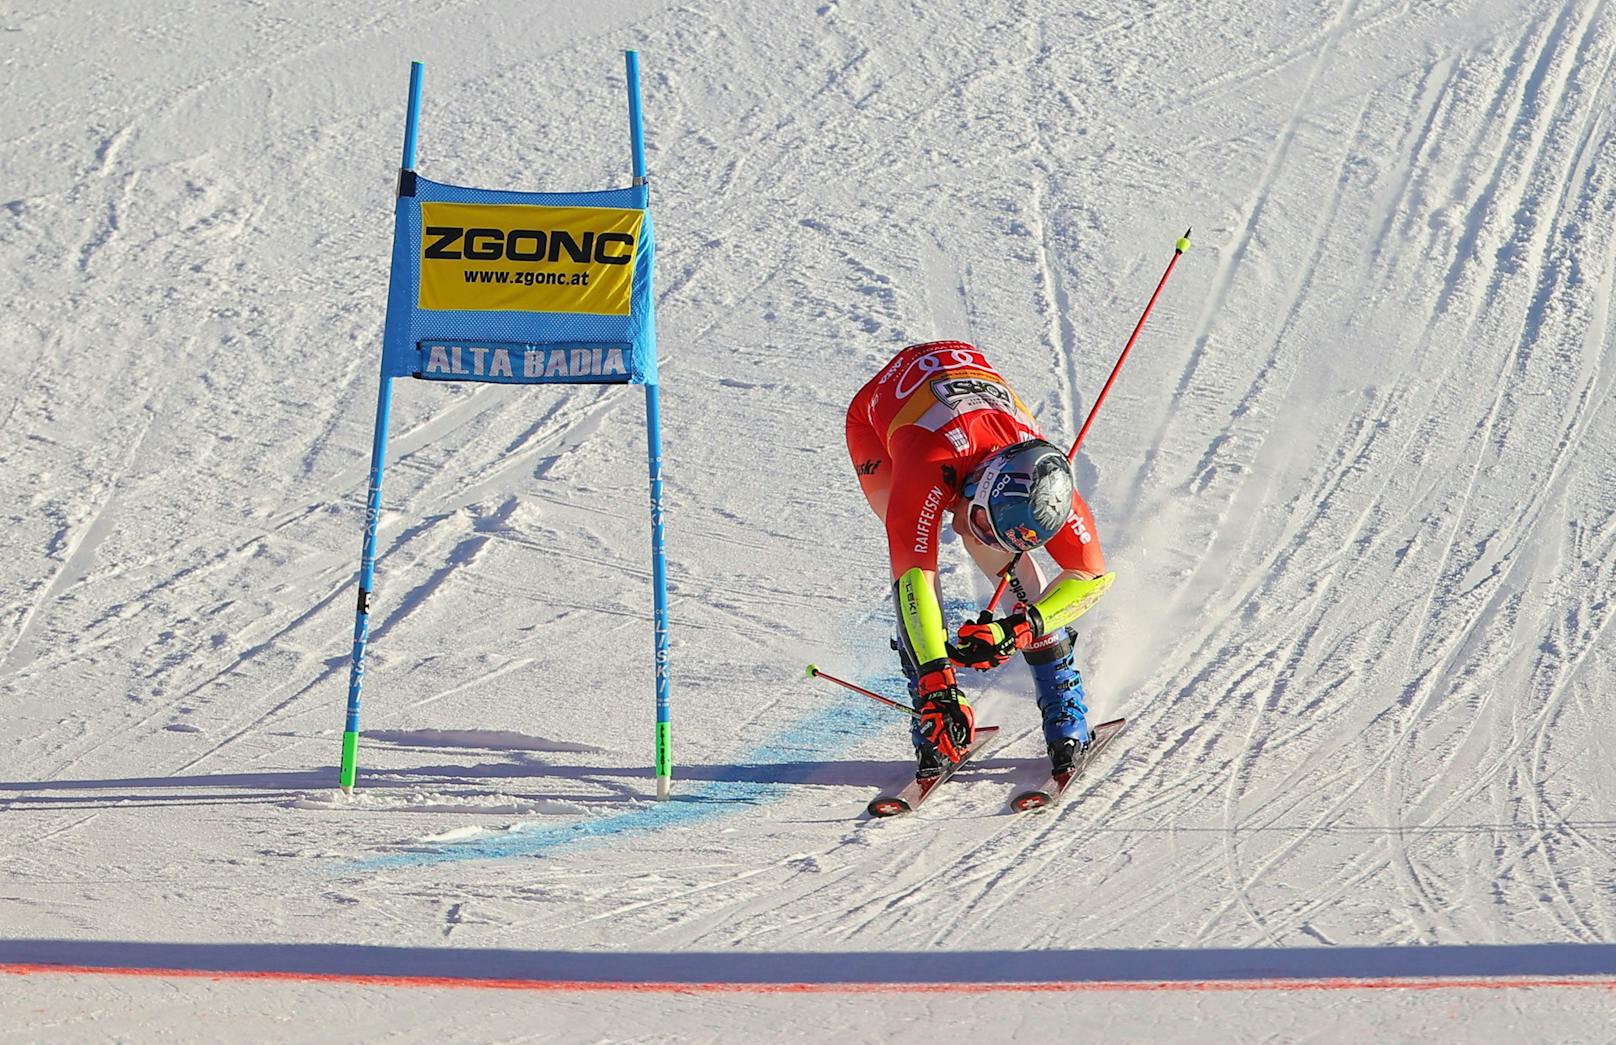 Beim Riesentorlauf von Alta Badia führte kein Weg an Marco Odermatt vorbei. Der Schweizer gewann vor Filip Zubcic. Marco Schwarz wurde Vierter.